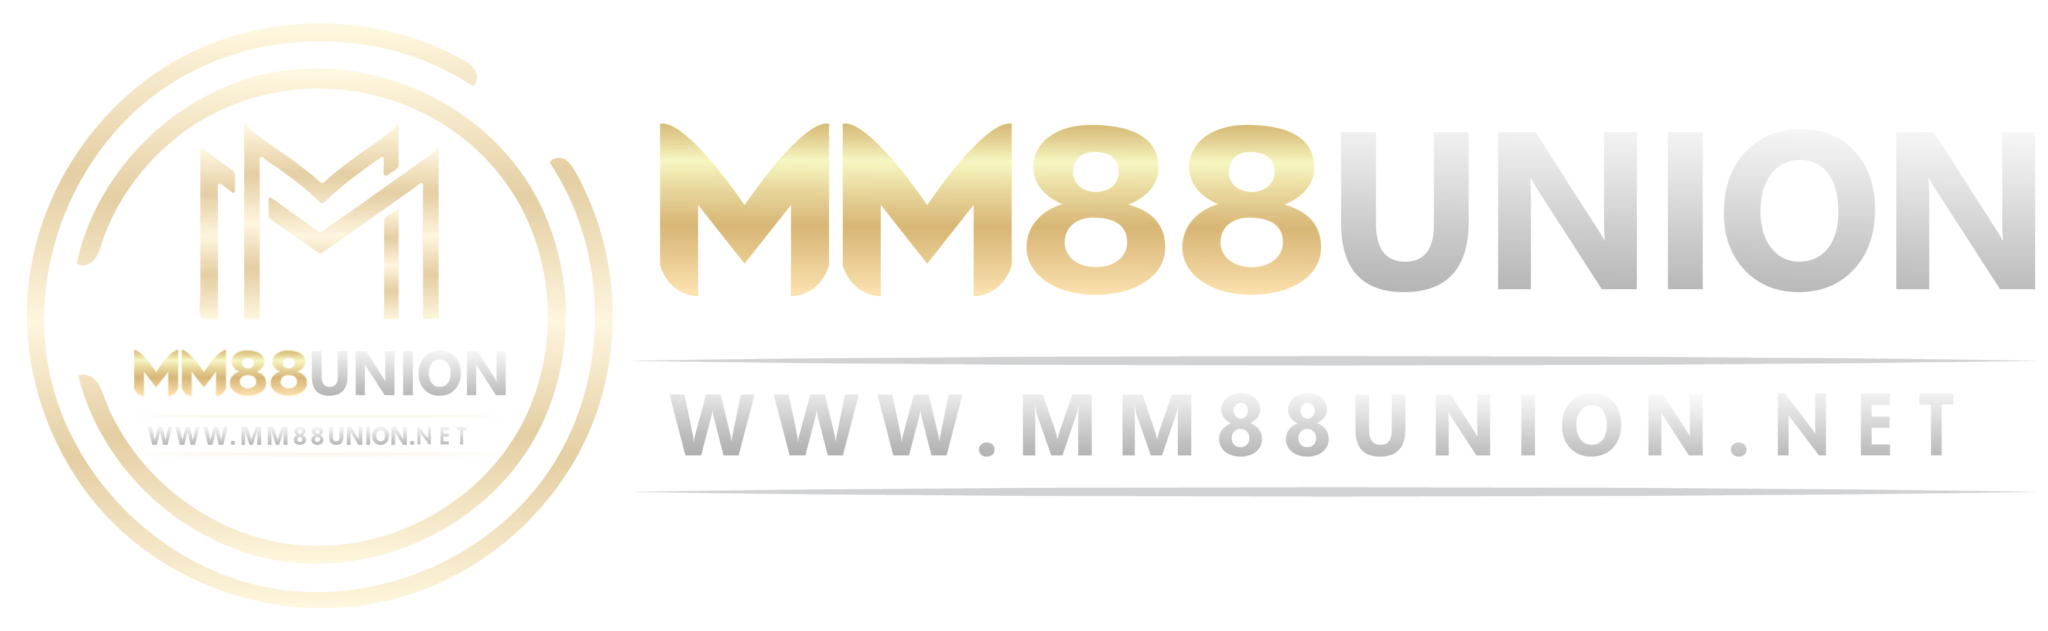 MM88UNION.NET